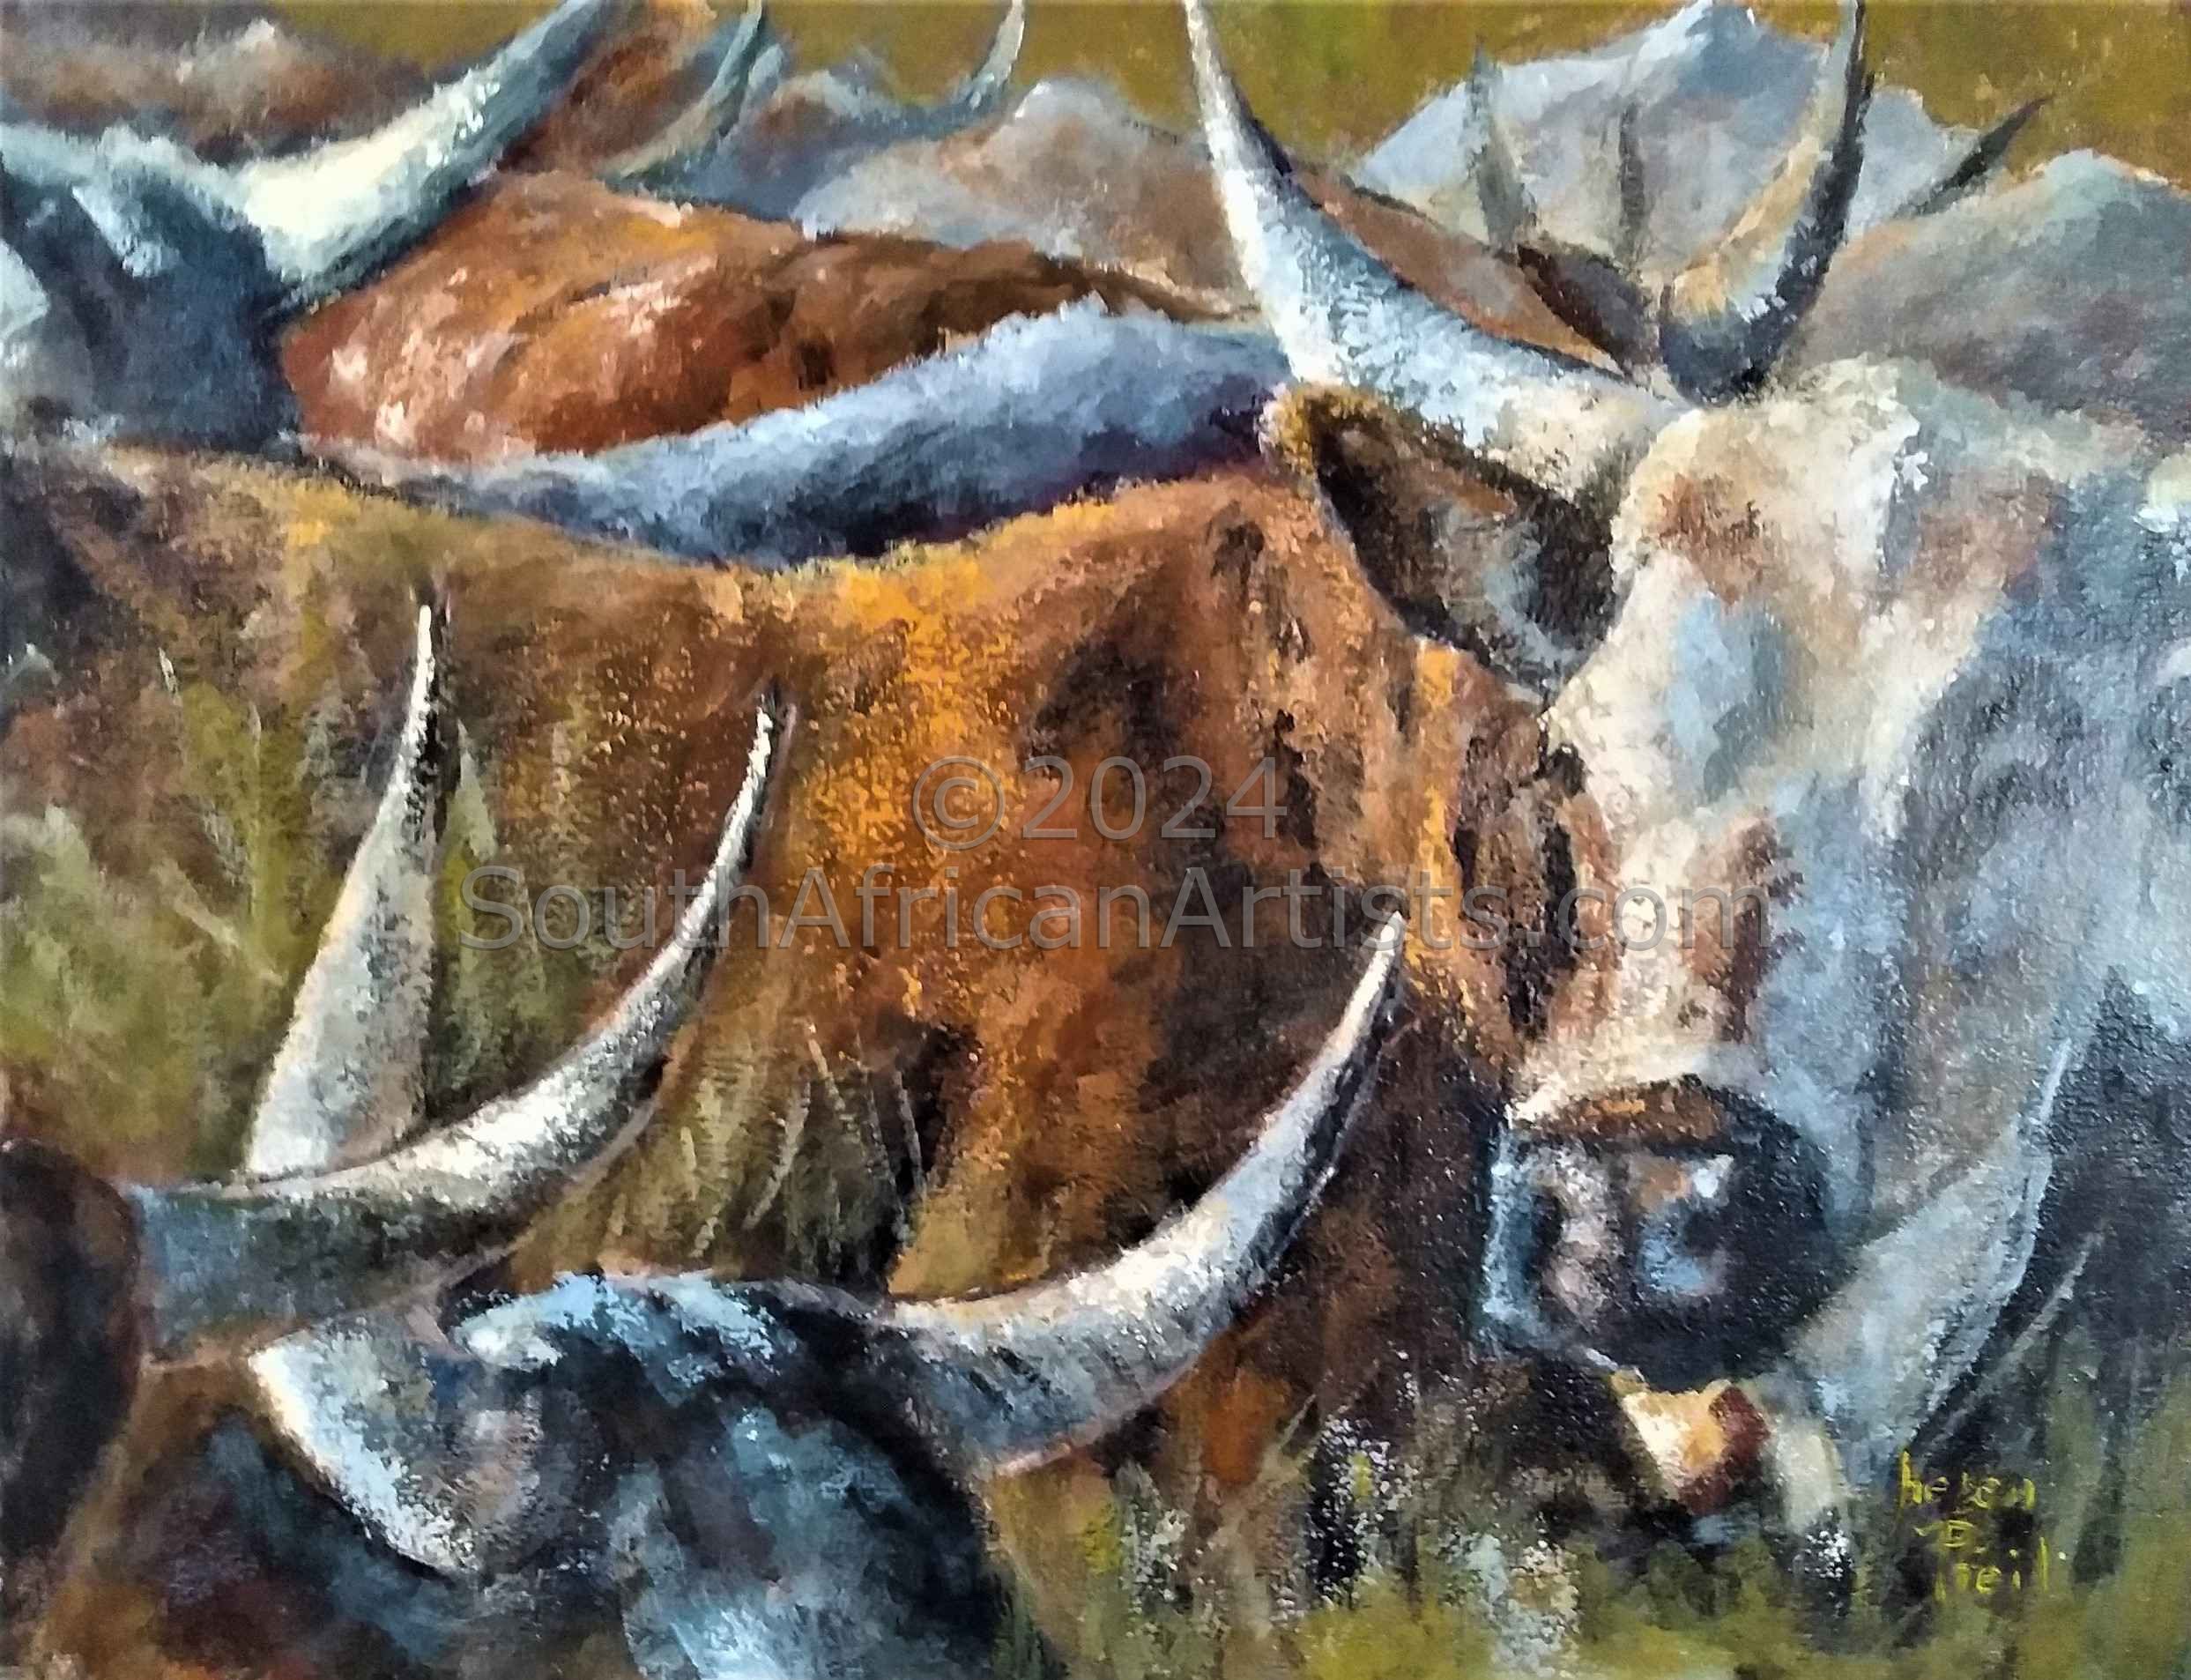 Horns (Nguni Cattle)